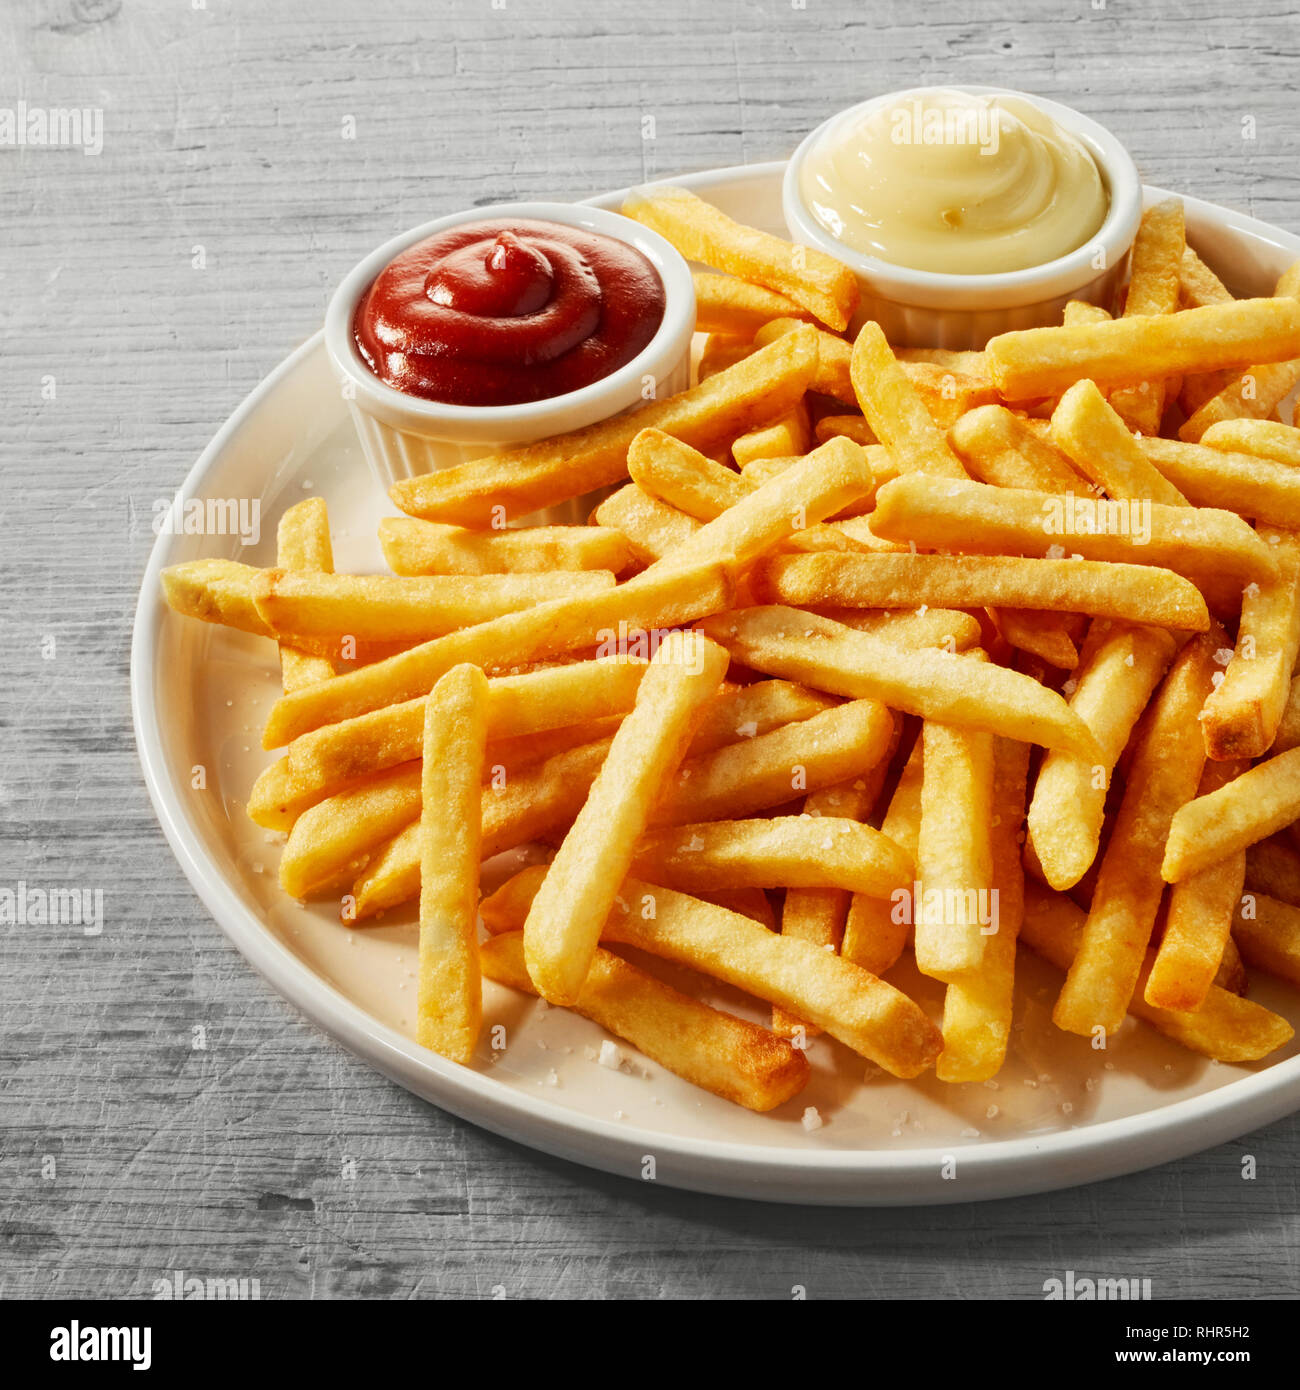 Assiette de frites dorées, chips, Pommes Frites ou avec peu de bols de sauce tomate et de la mayonnaise dans une vue en gros plan, format carré Banque D'Images